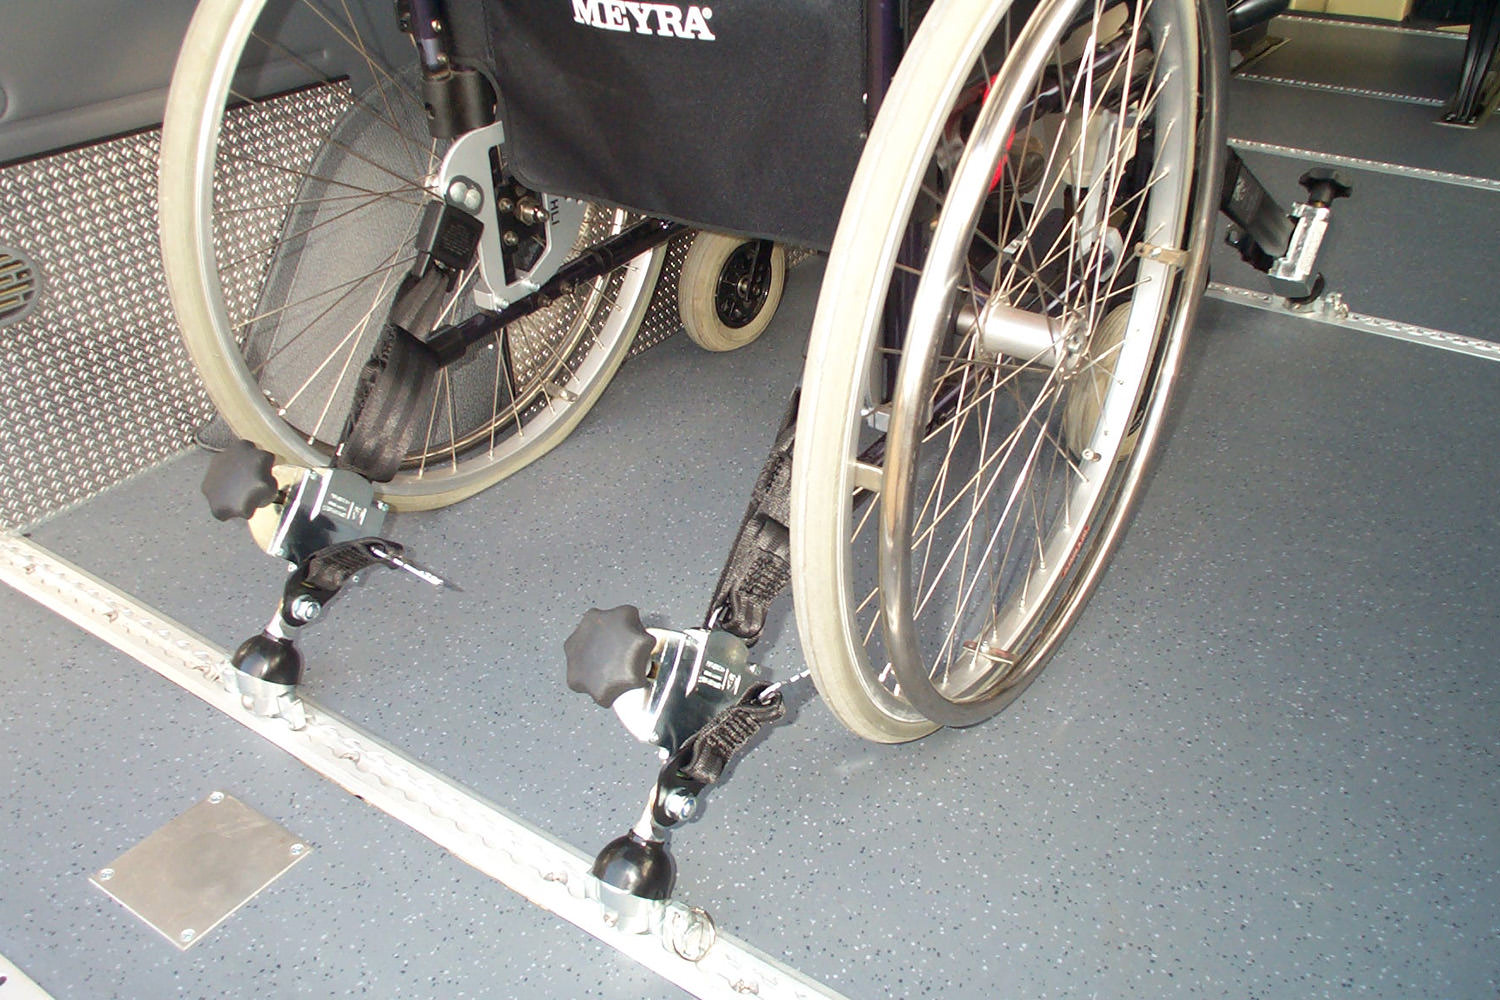 Systeme zur Rollstuhl-Fixierung